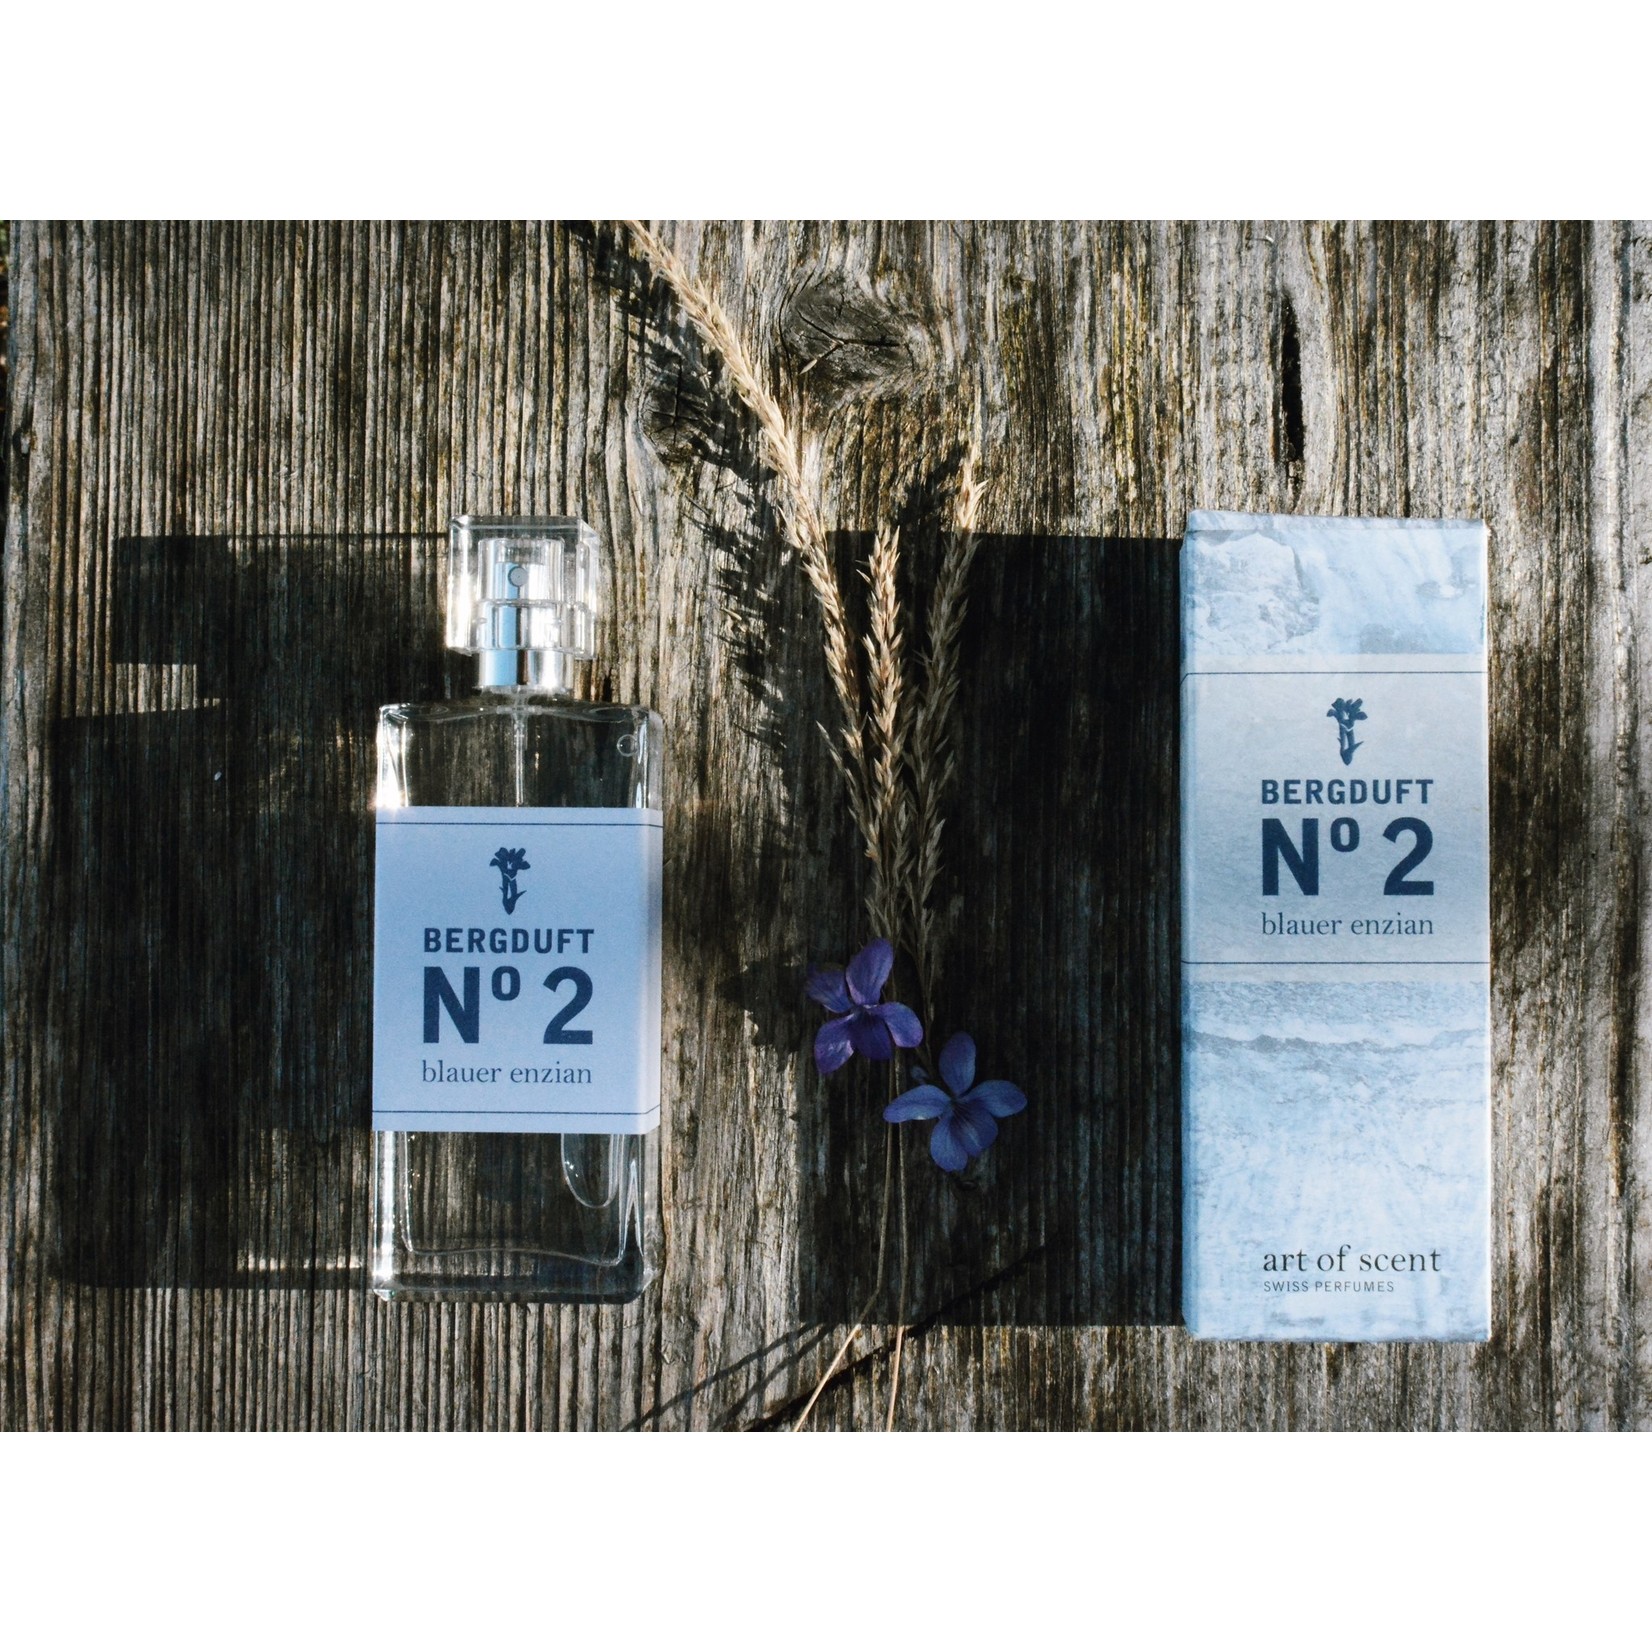 Berg & Kraft Bergduft Eau de Parfum 2 / 50ml blauer enzian